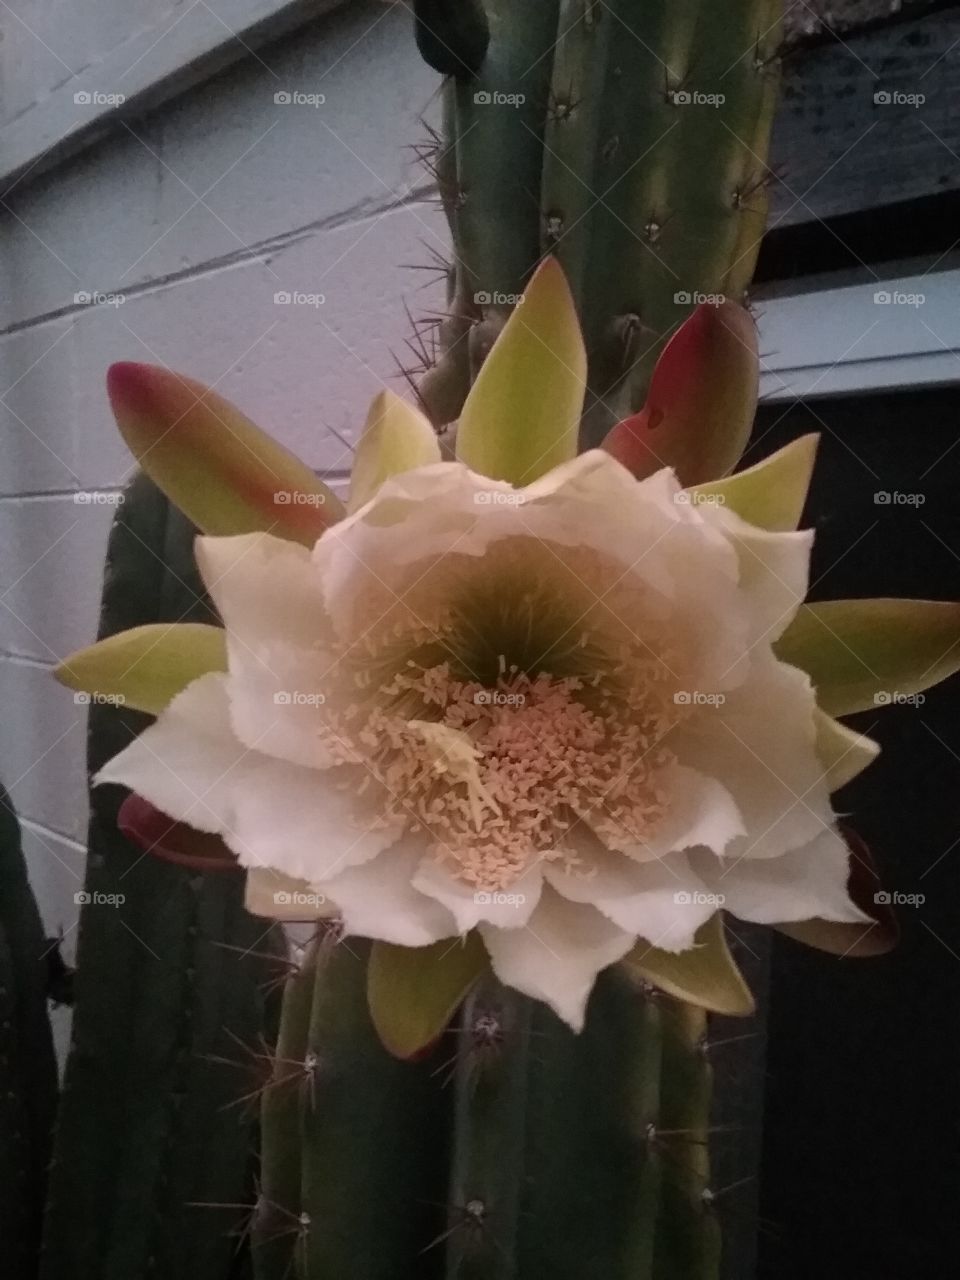 on dusk cerie monstrous flower starting to open!